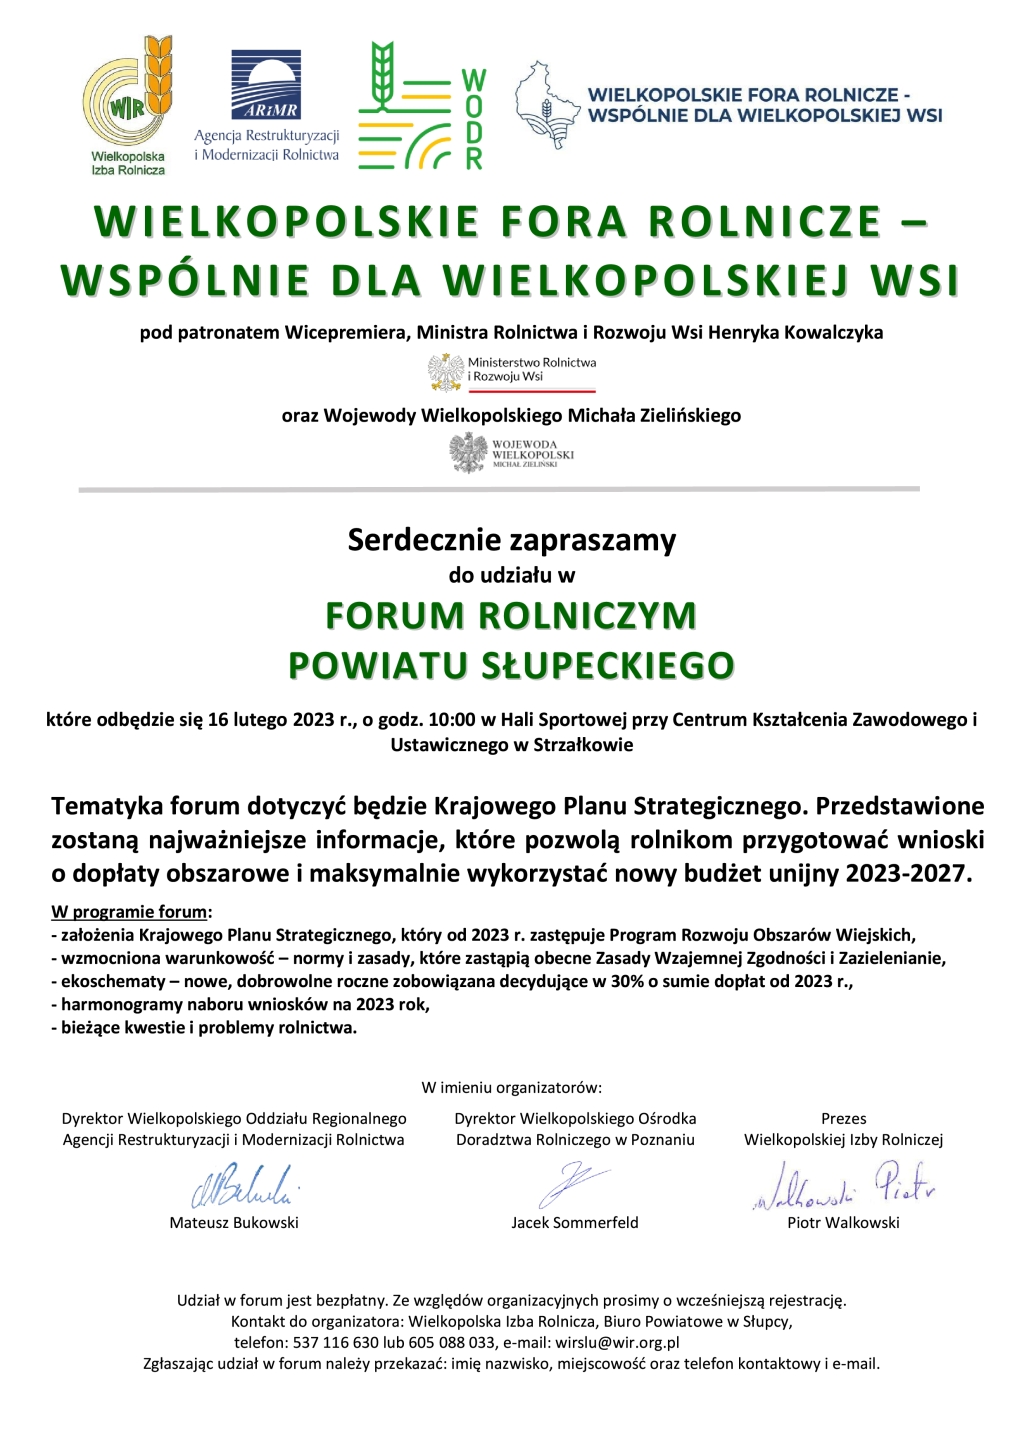 Forum Rolnicze Powiatu Słupeckiego